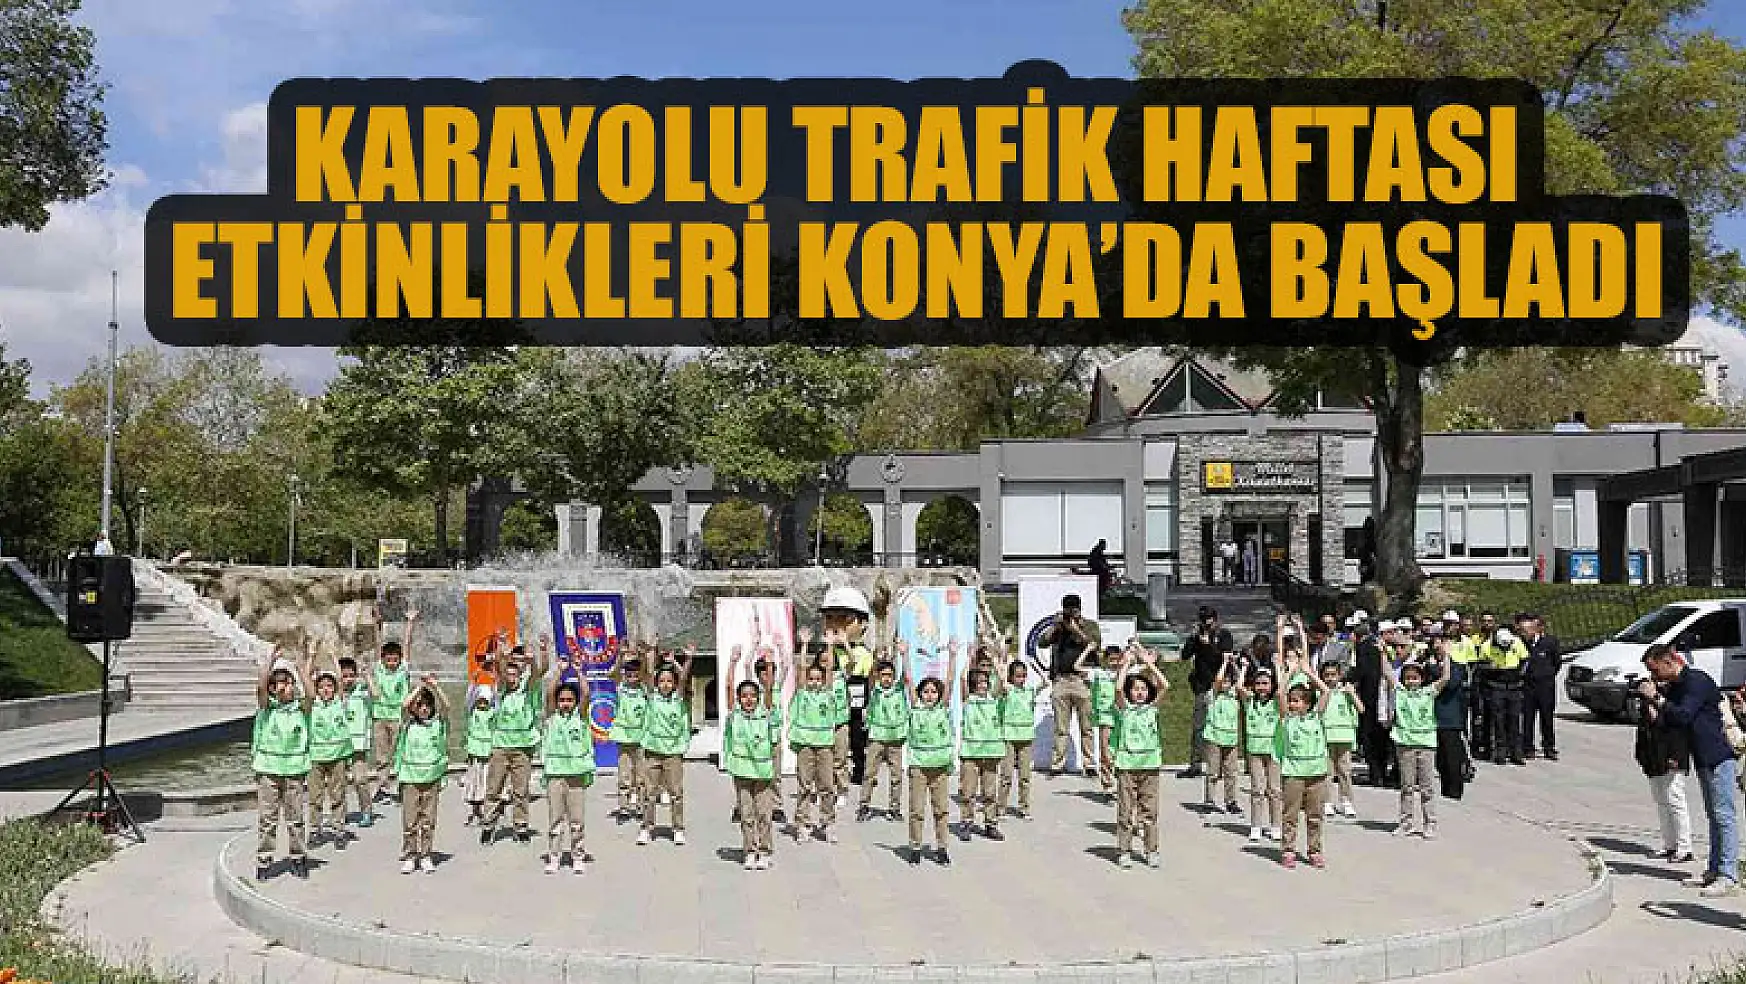 Konya'da Karayolu Trafik Haftası etkinlikleri başladı